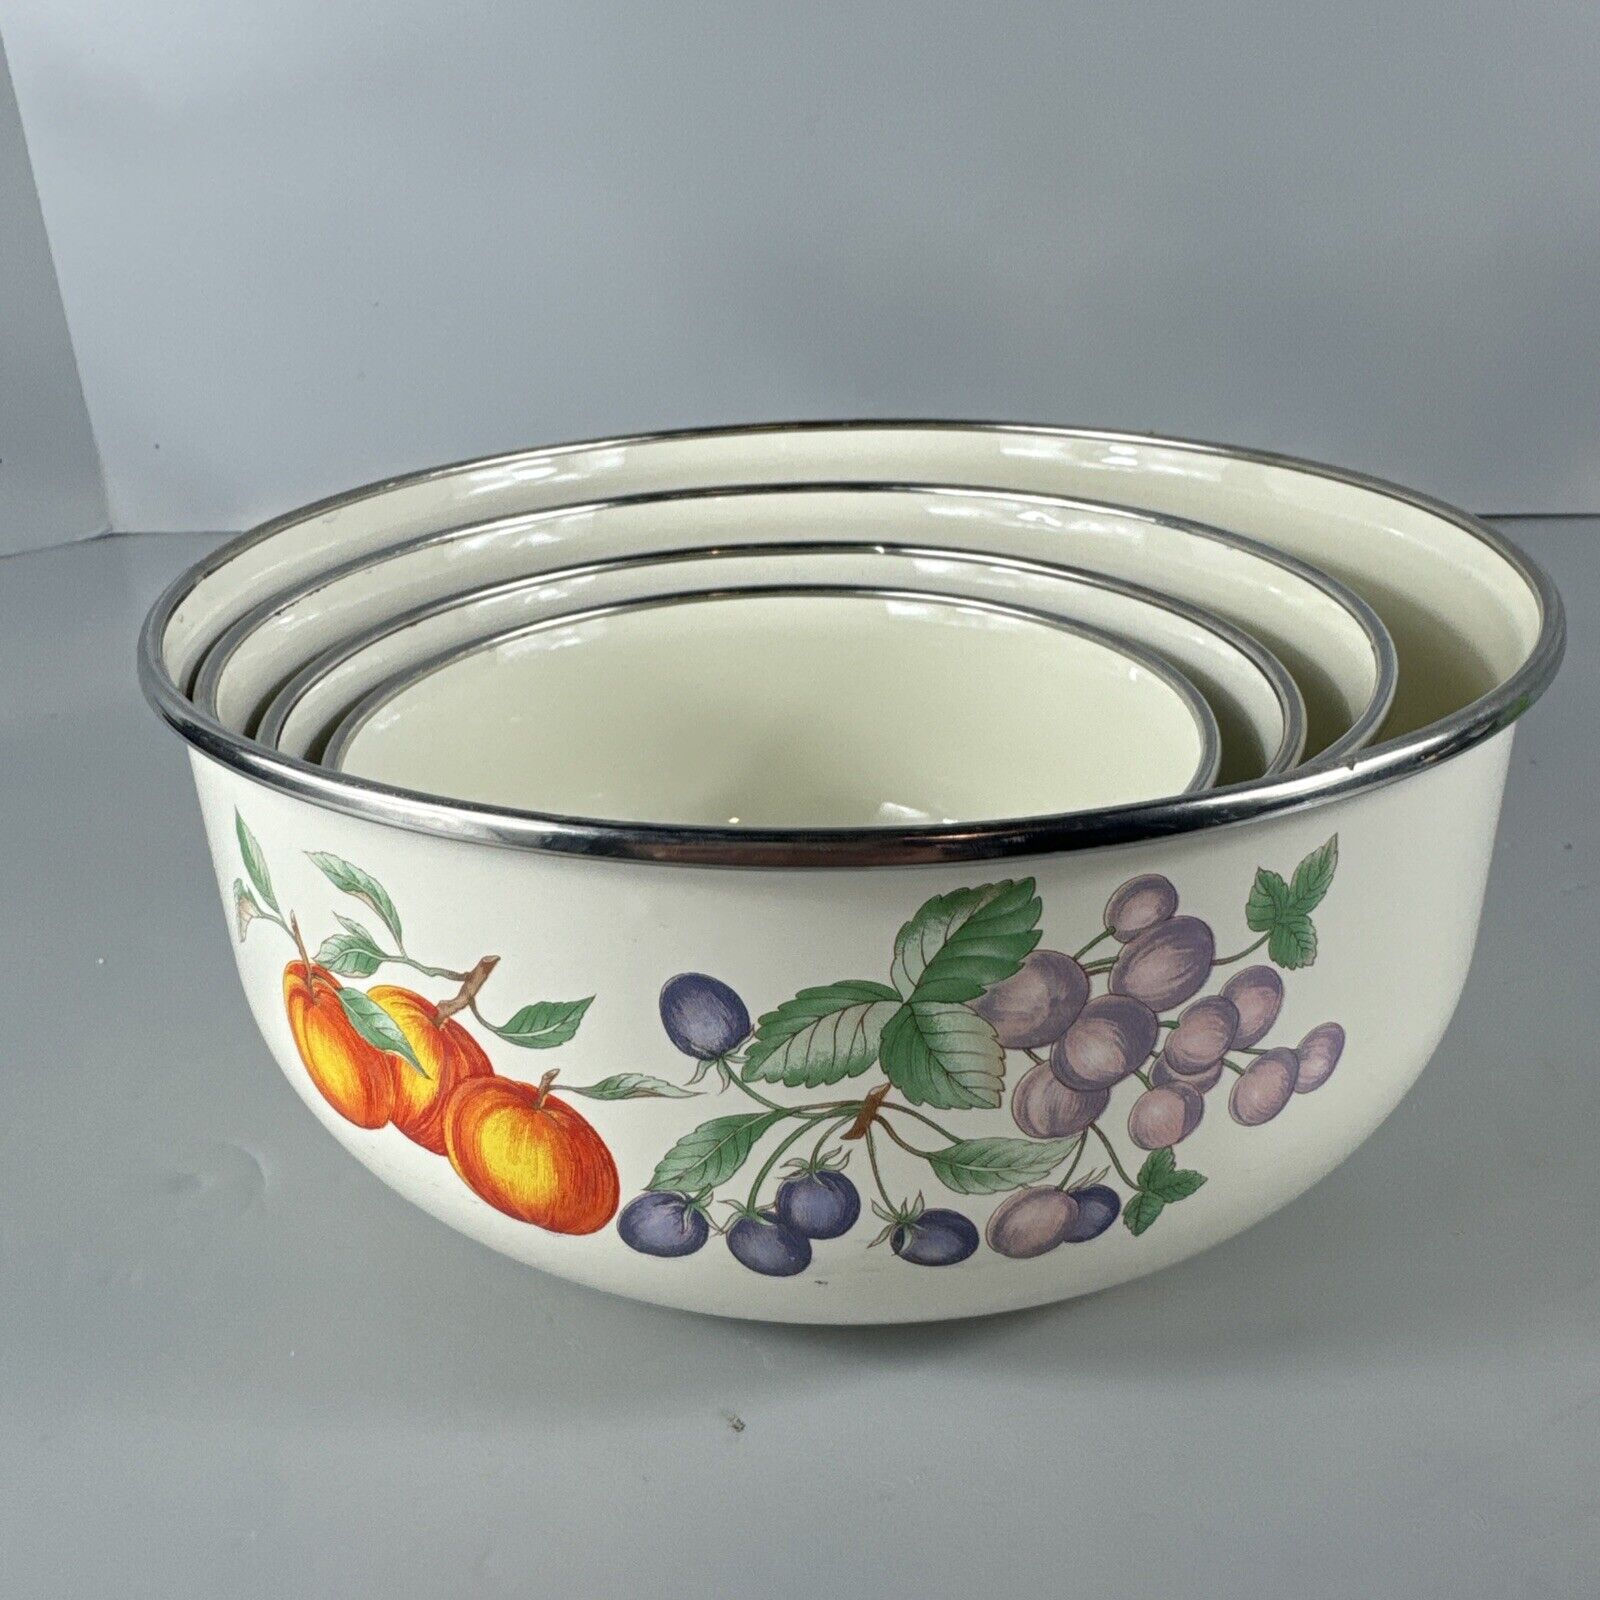 Vintage Set Of 4 Nesting Enamel Mixing Bowls With Orange And Purple Fruit